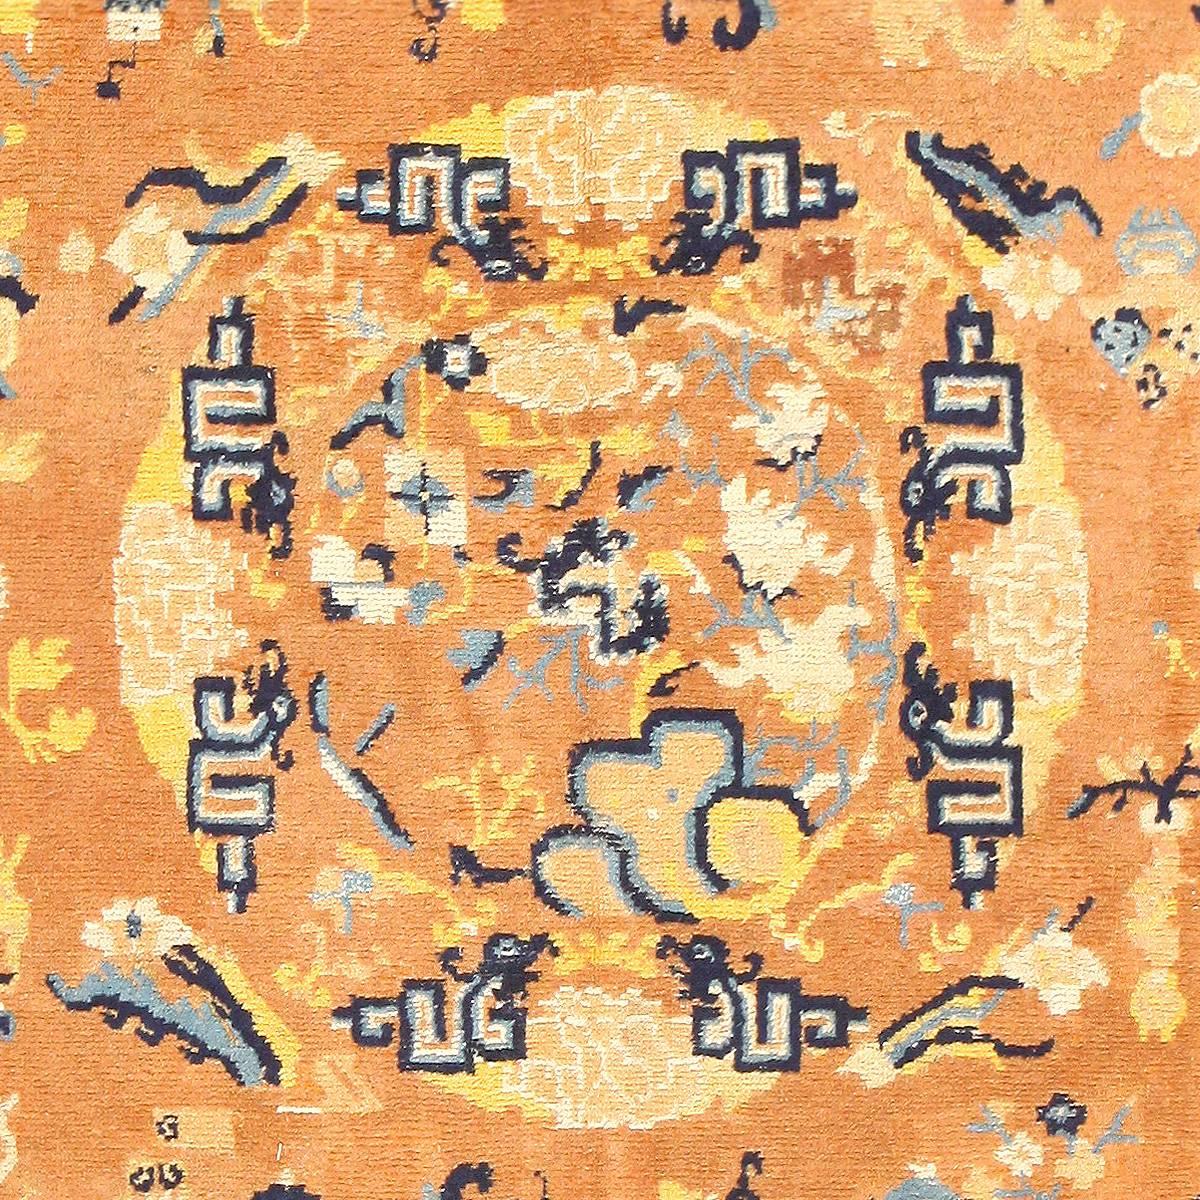 Tapis chinois Ningxia de la fin du 17ème siècle, Pays d'origine / Type de tapis : Tapis de Chine, Circa Date : Fin du 17ème siècle - Taille : 6 ft 2 in x 12 ft (1.88 m x 3.66 m)

Contrairement à de nombreux tapis chinois traditionnels, celui-ci est